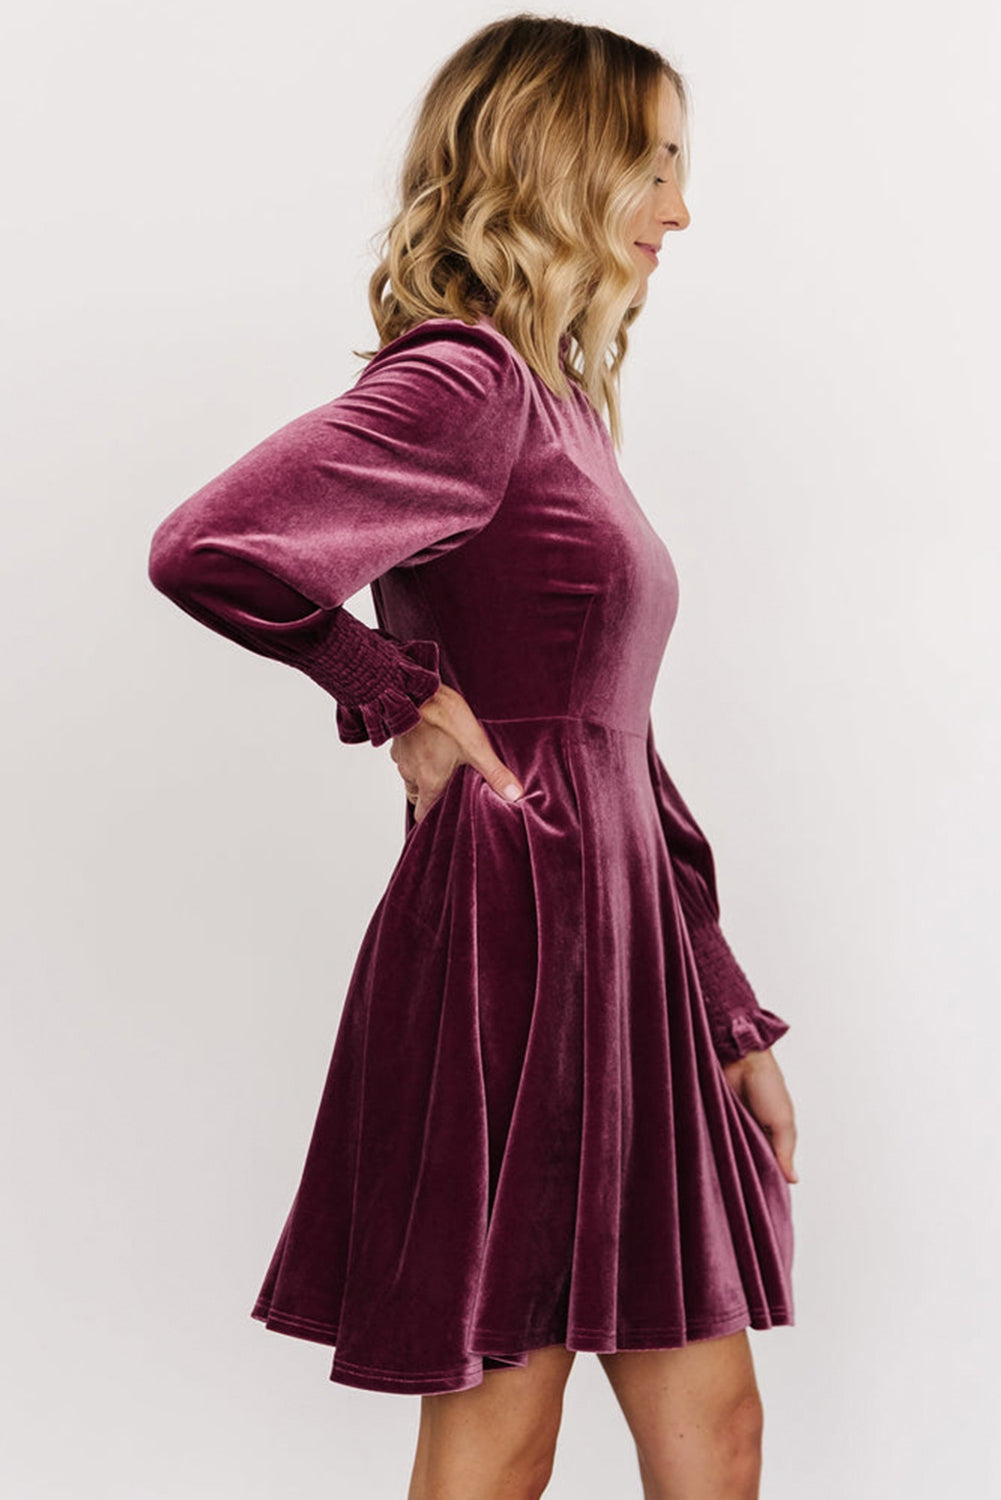 Burgundy Long Sleeve Dress, Smocked High Neck Flounce Sleeve Velvet Dress